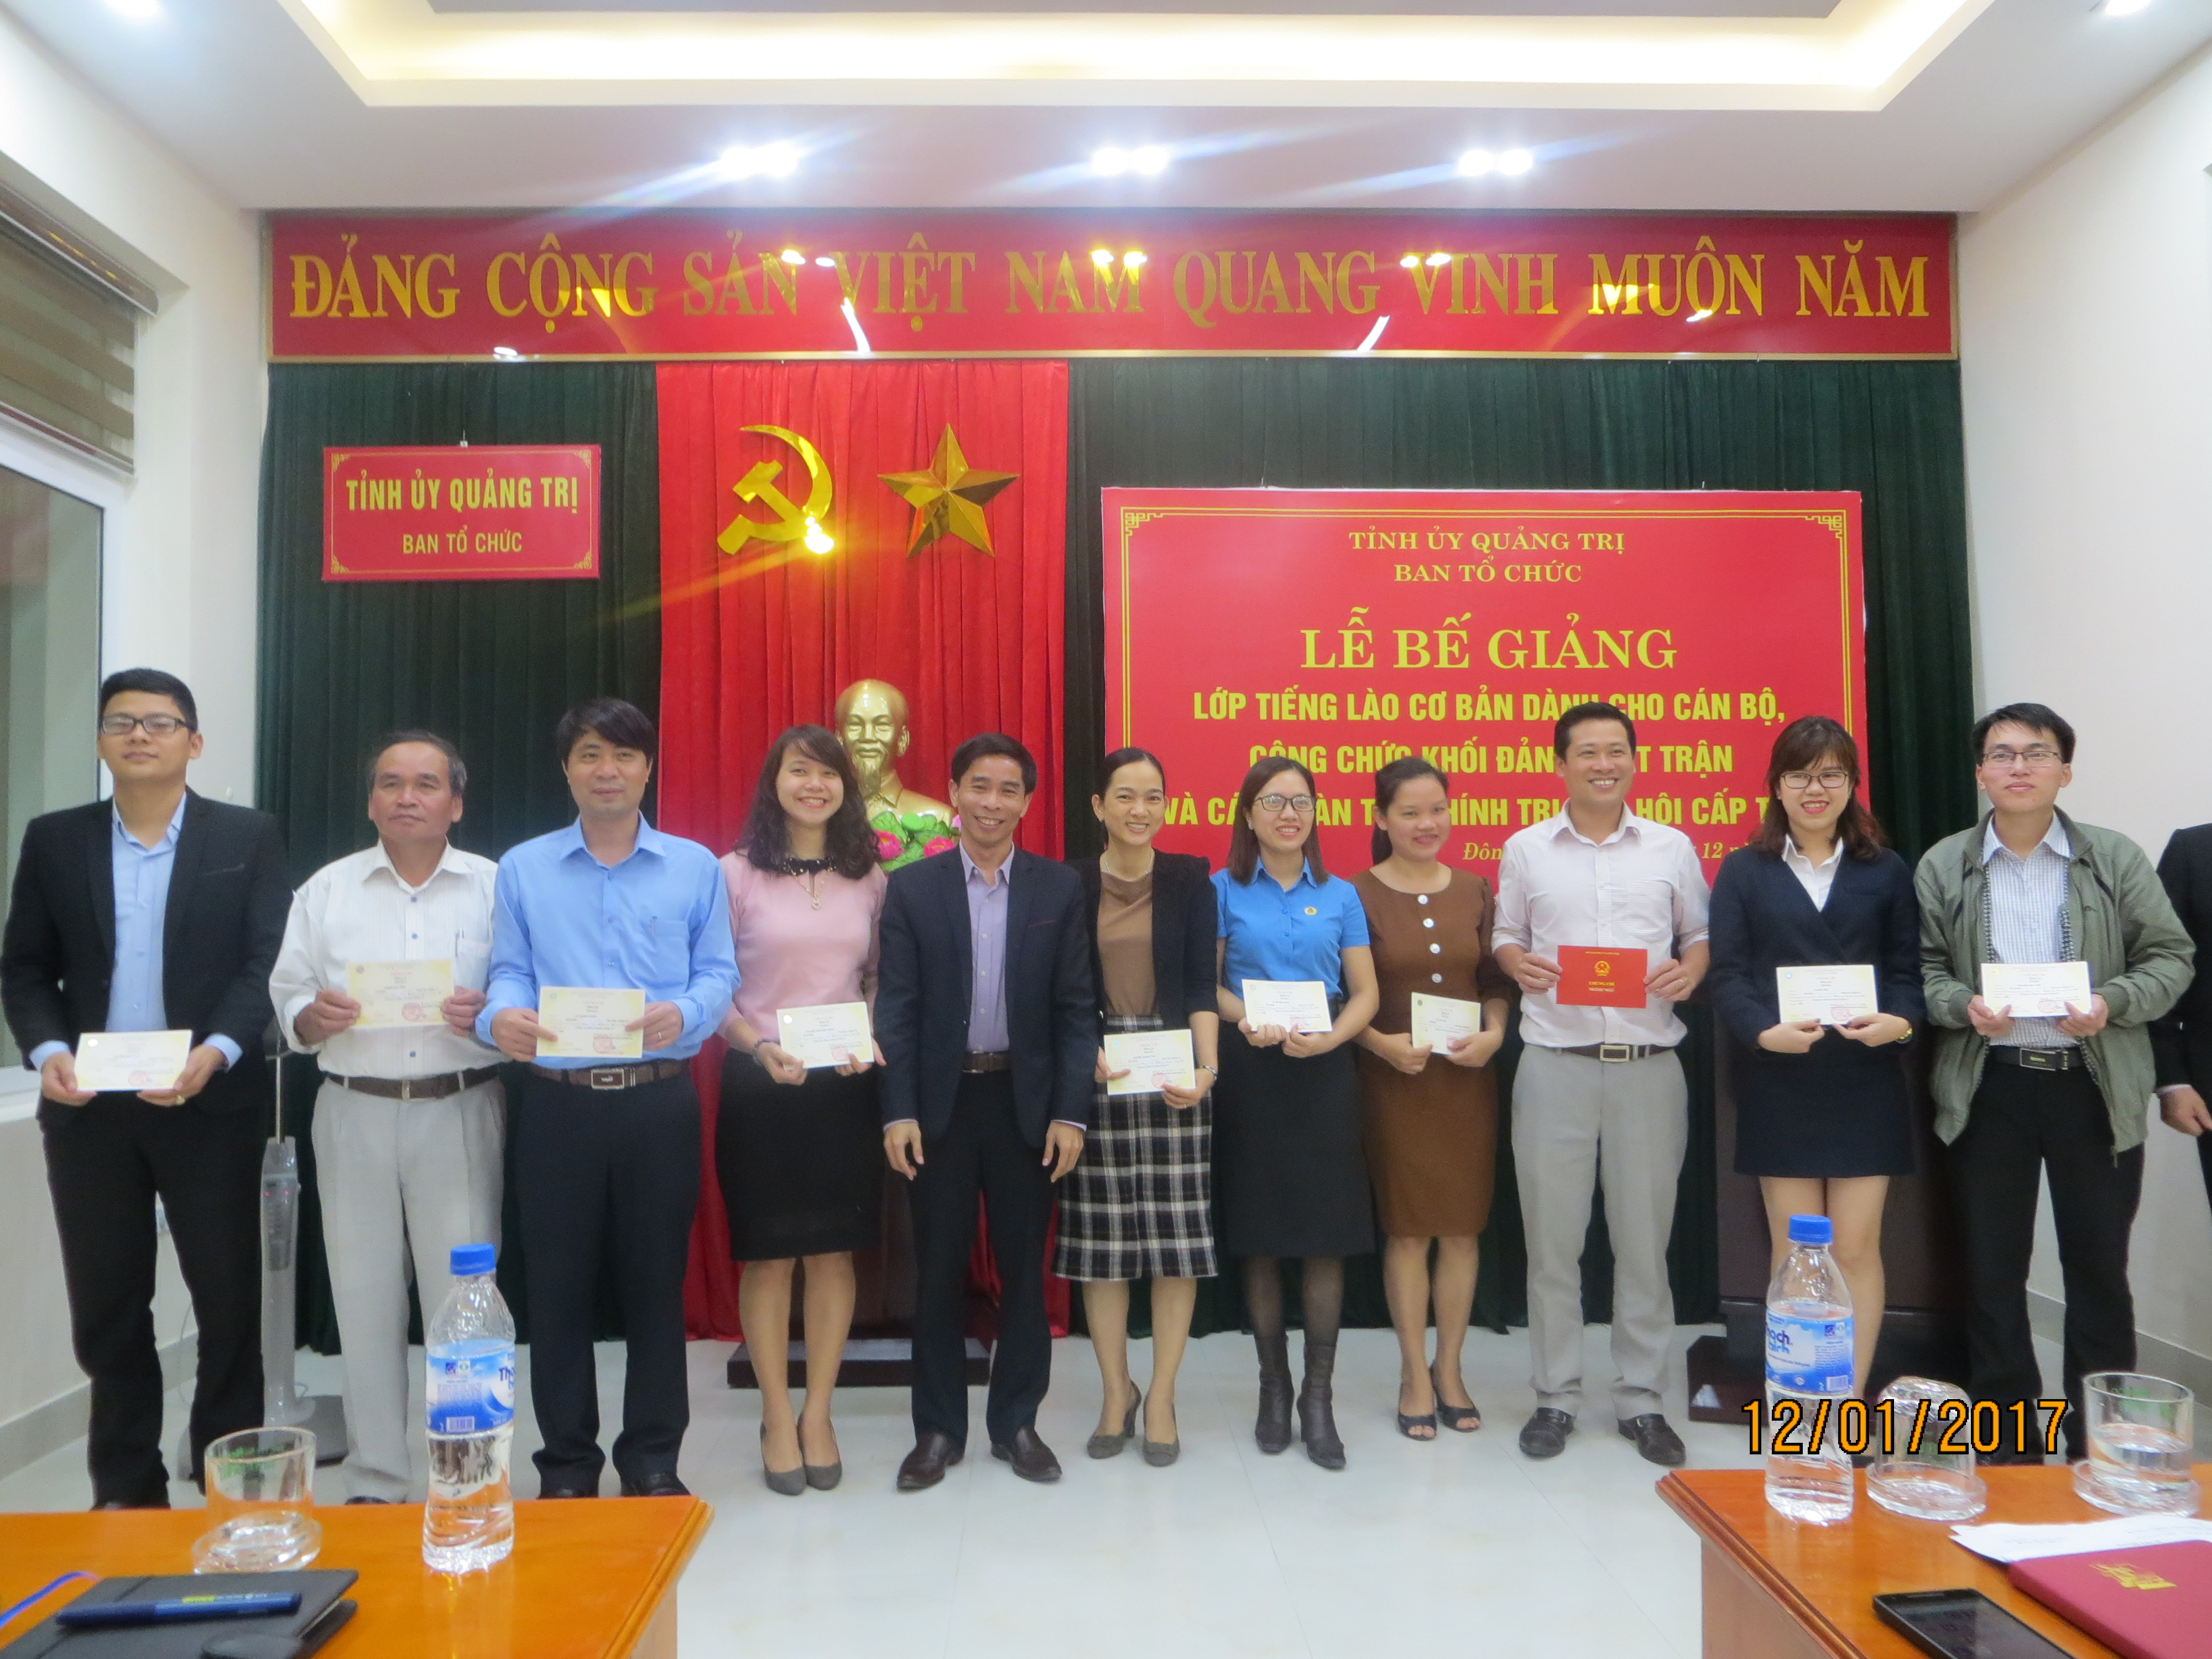  Bế giảng lớp học tiếng Lào cơ bản dành cho cán bộ, công chức cơ quan khối Đảng, mặt trận, các đoàn thể chính trị xã hội cấp tỉnh năm 2017